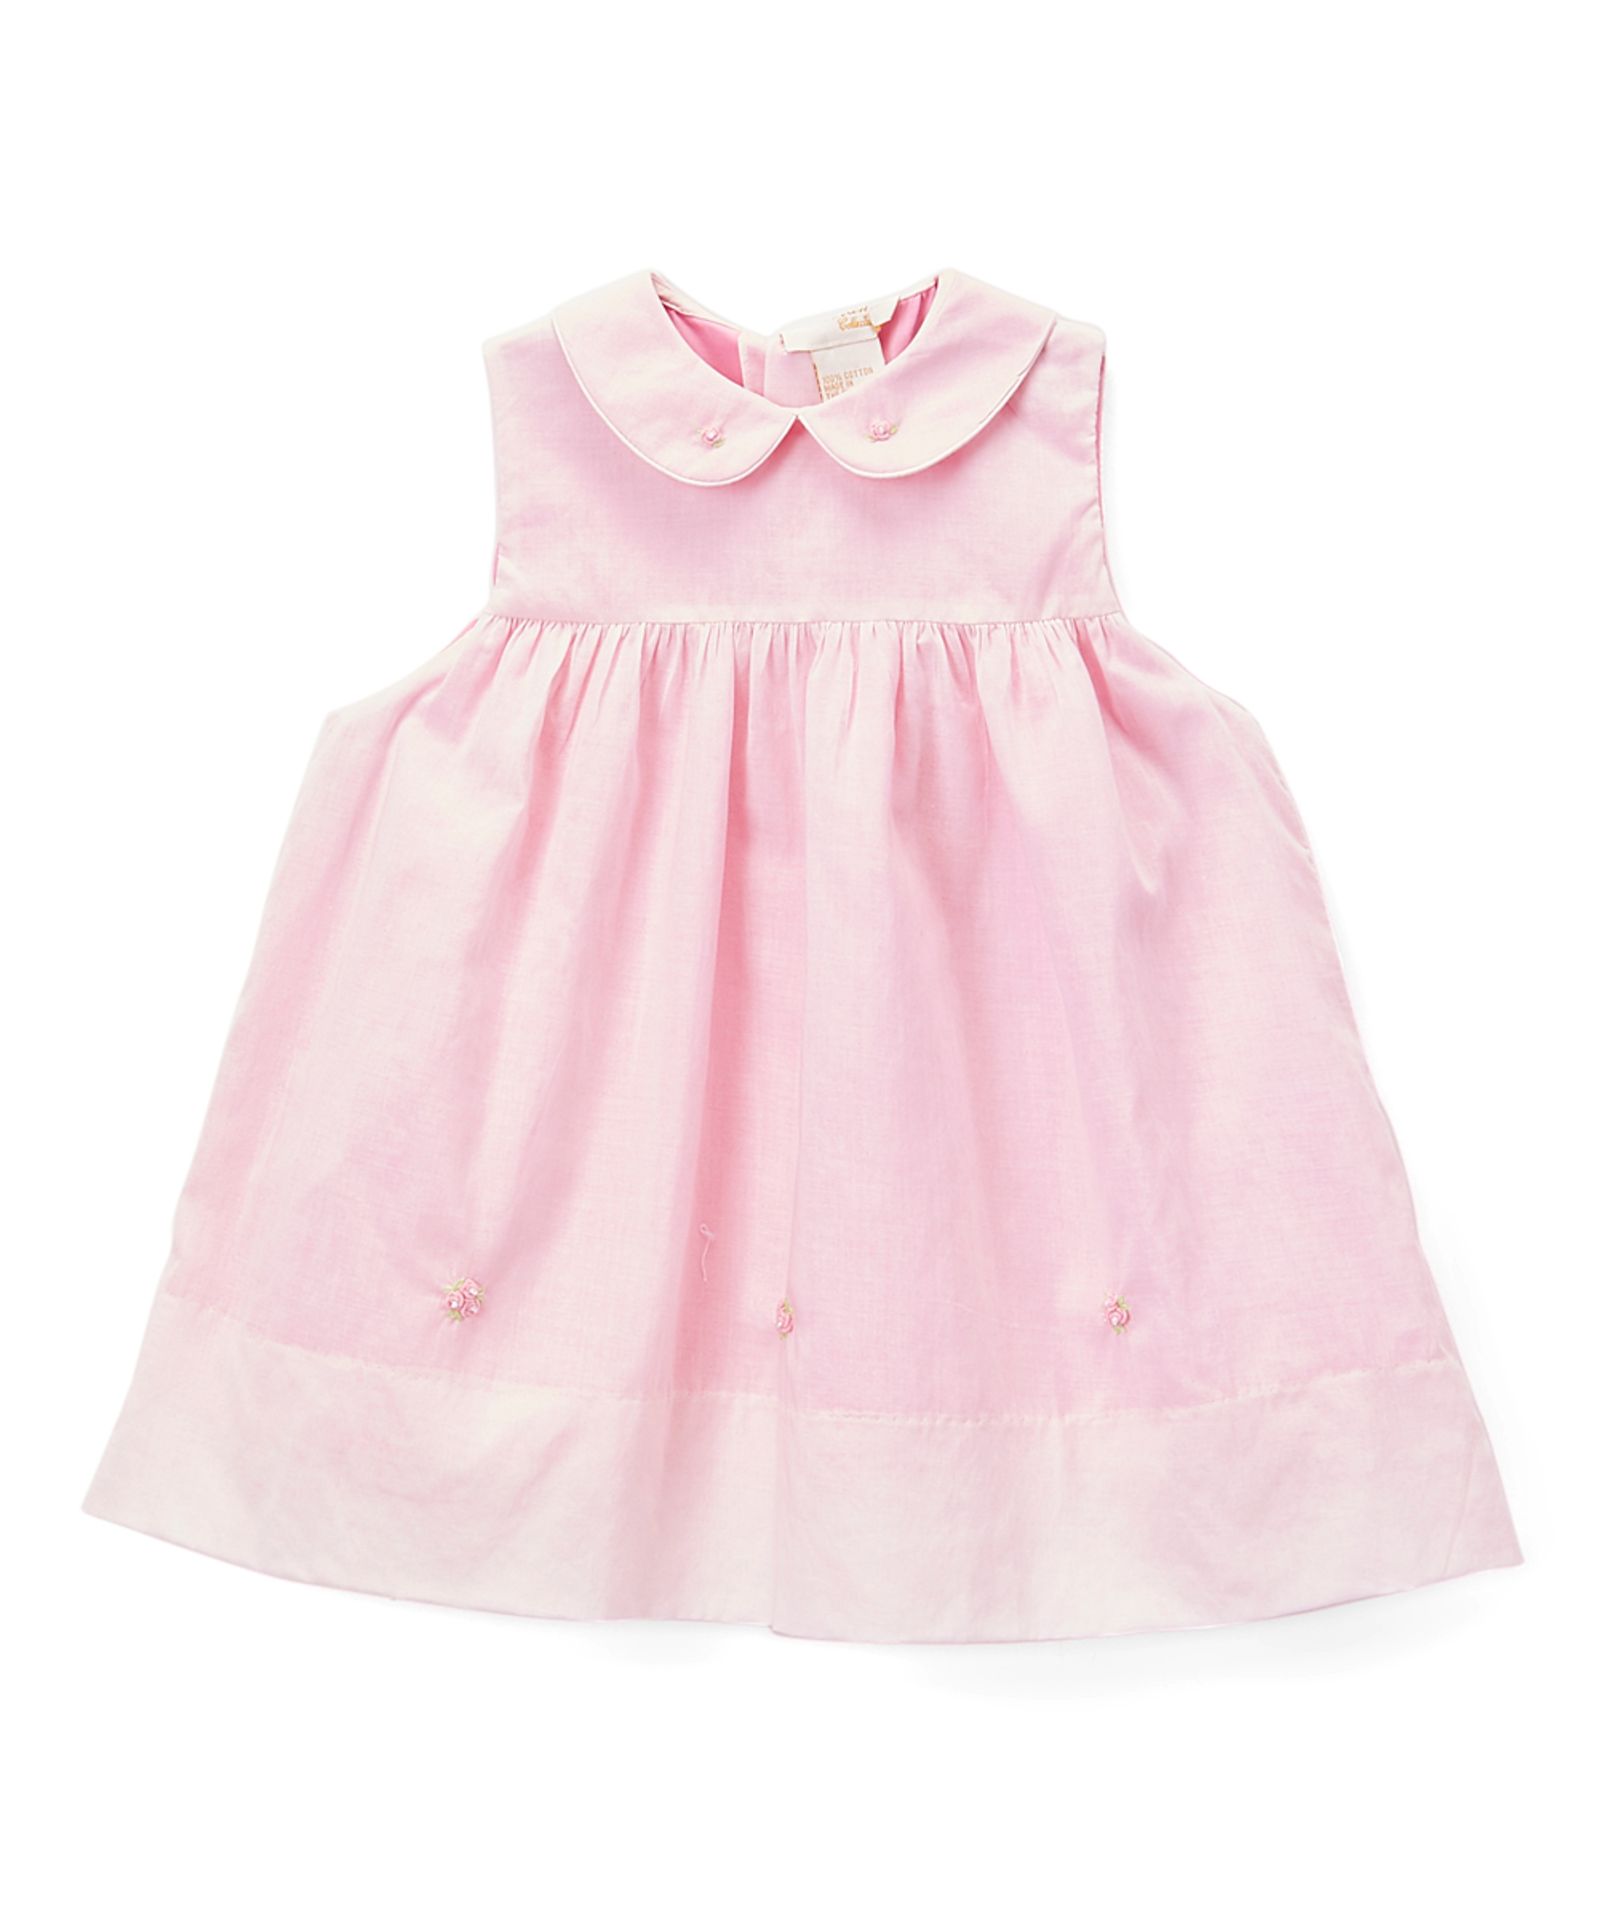 Rosalina Pink Rose Babydoll Dress - Infant (Us Size: 3 Months) [Ref: 44888125-1]